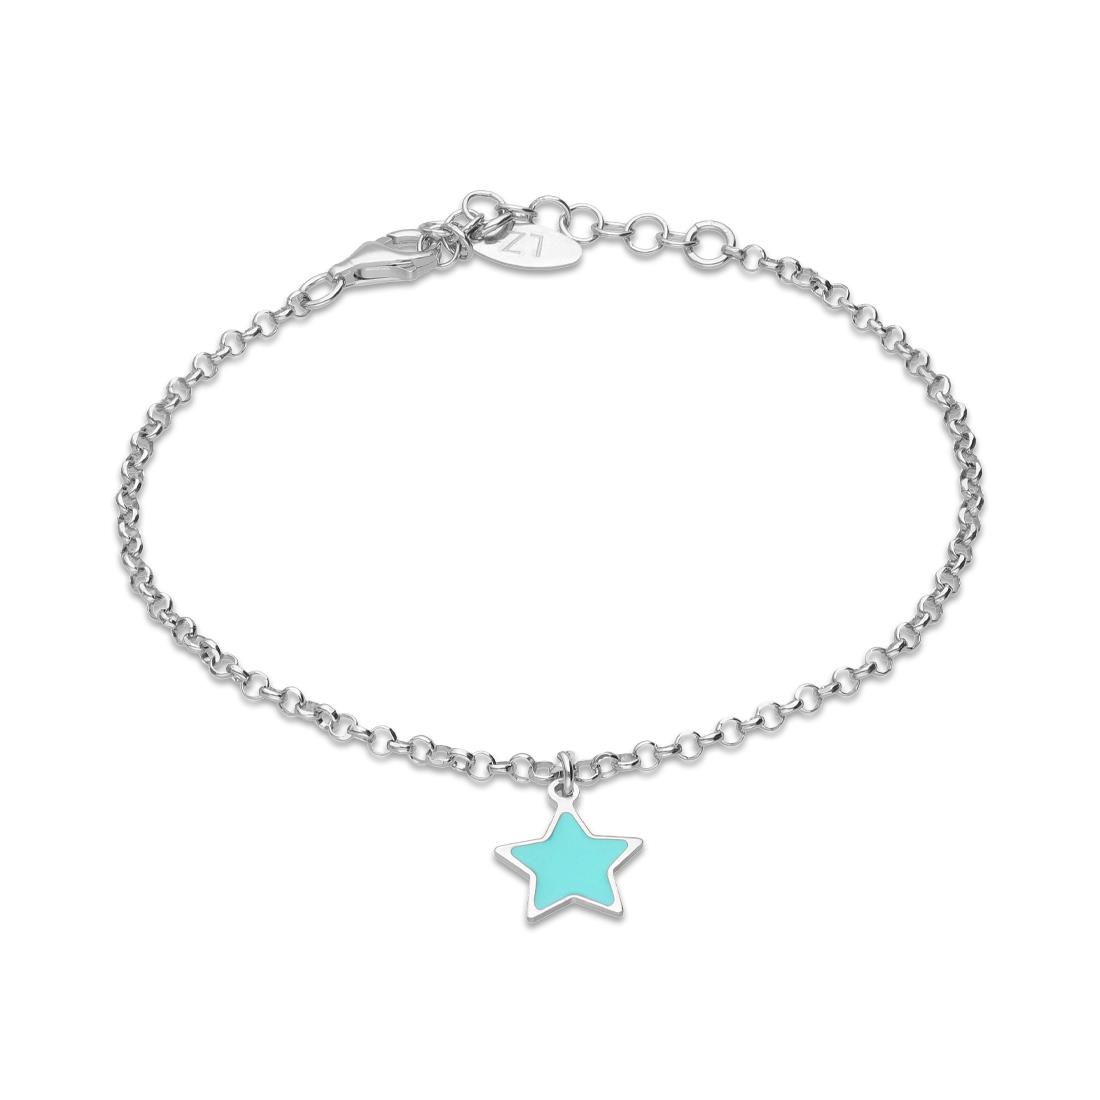 Pulsera de plata con estrella celeste - LUXURY ZONE